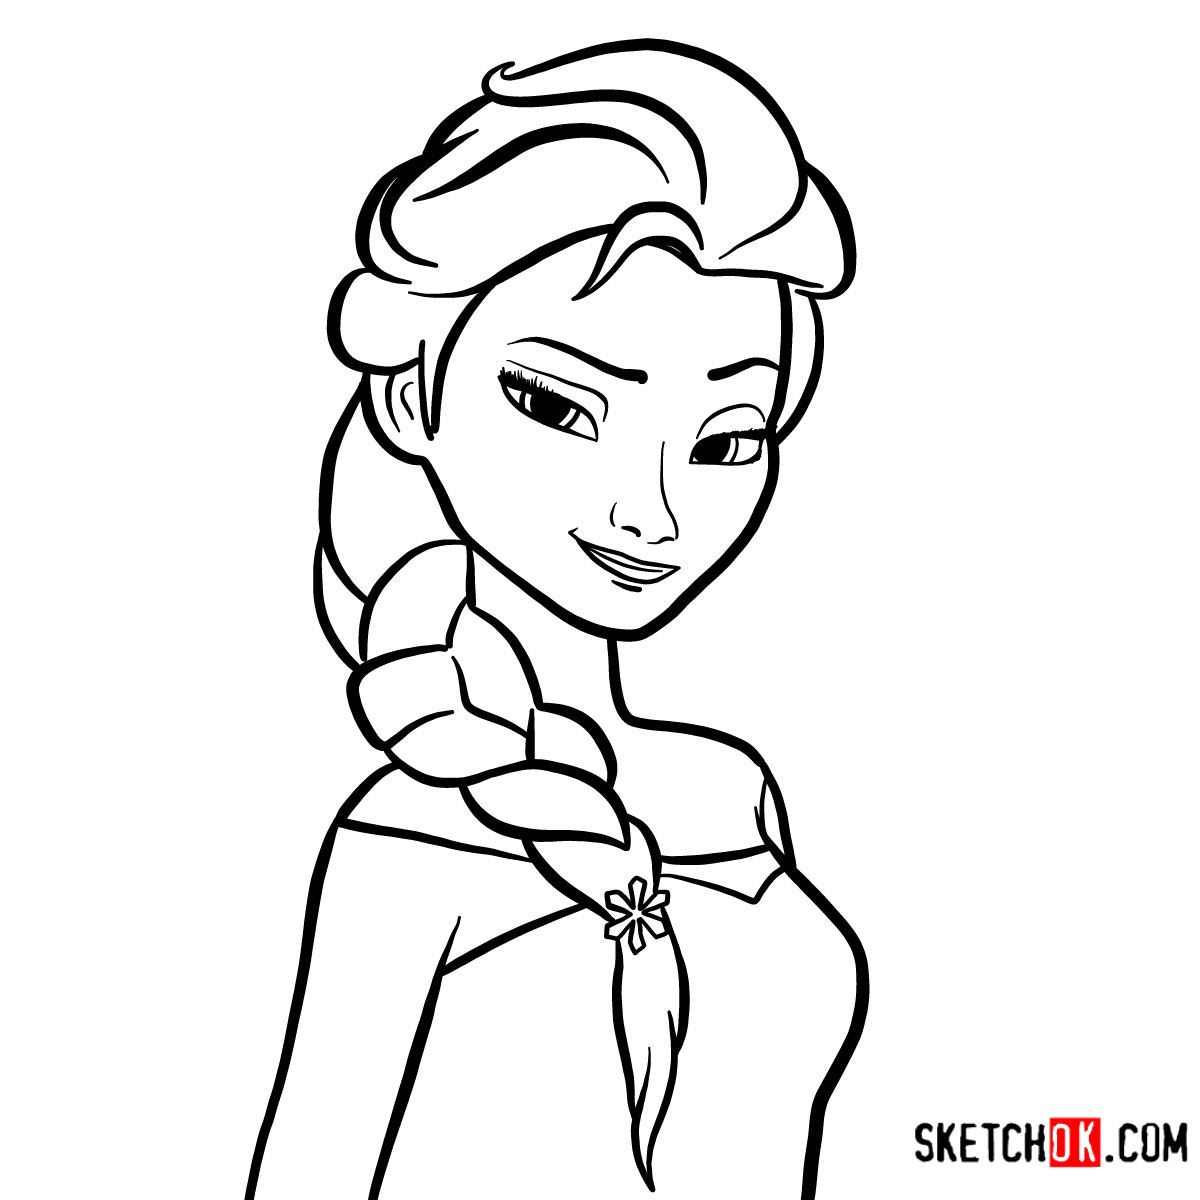 How to draw Princess Elsa's portrait | Frozen